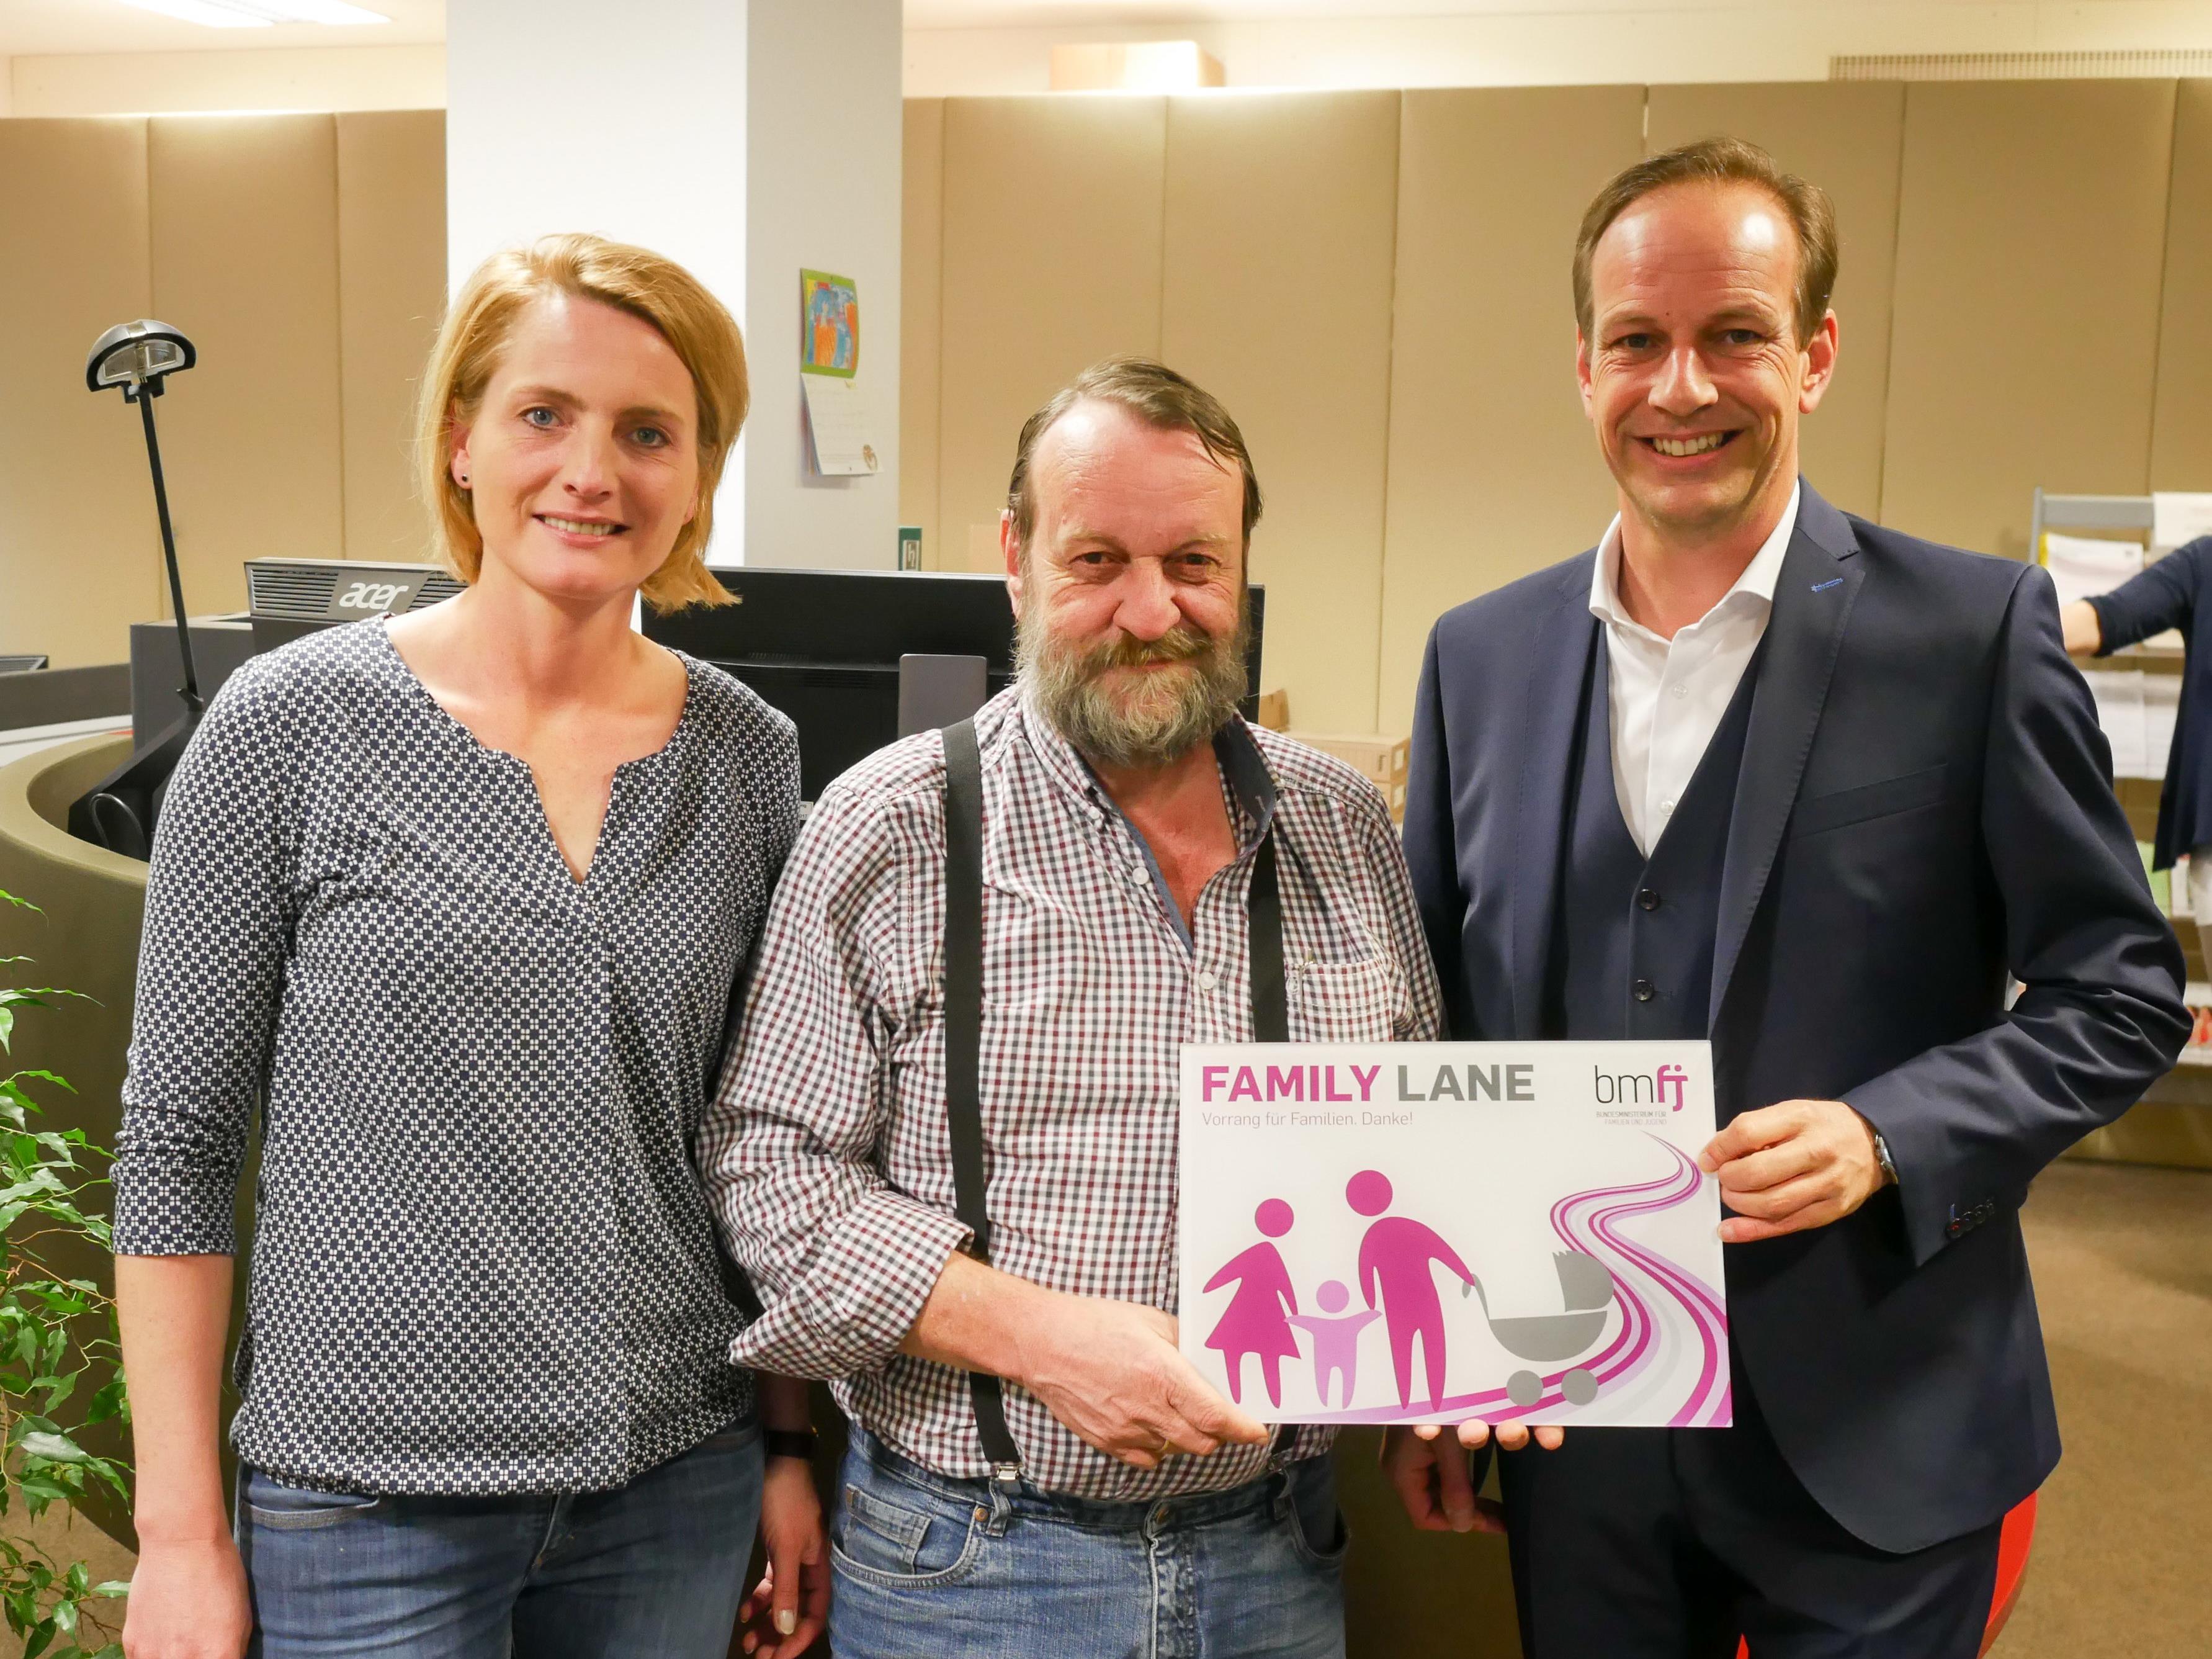 Familienstadträtin Angelika Benzer, der Leiter des Bürgerservice Egon Berchtold und Bürgermeister Dieter Egger präsentieren das Schild für die „Family Lane“